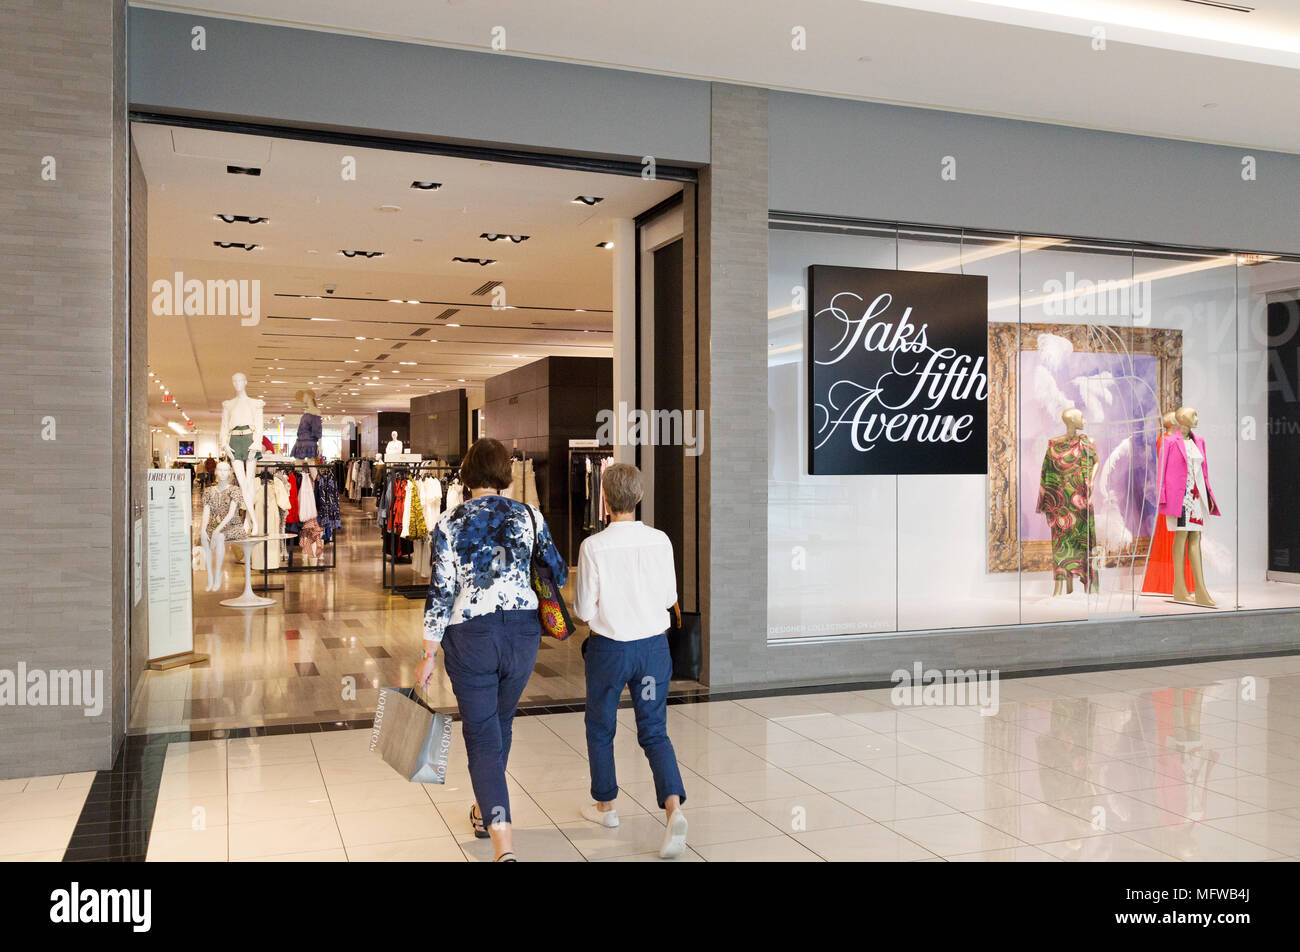 Interior of The Galleria shopping mall, Houston, Texas, USA Stock Photo -  Alamy